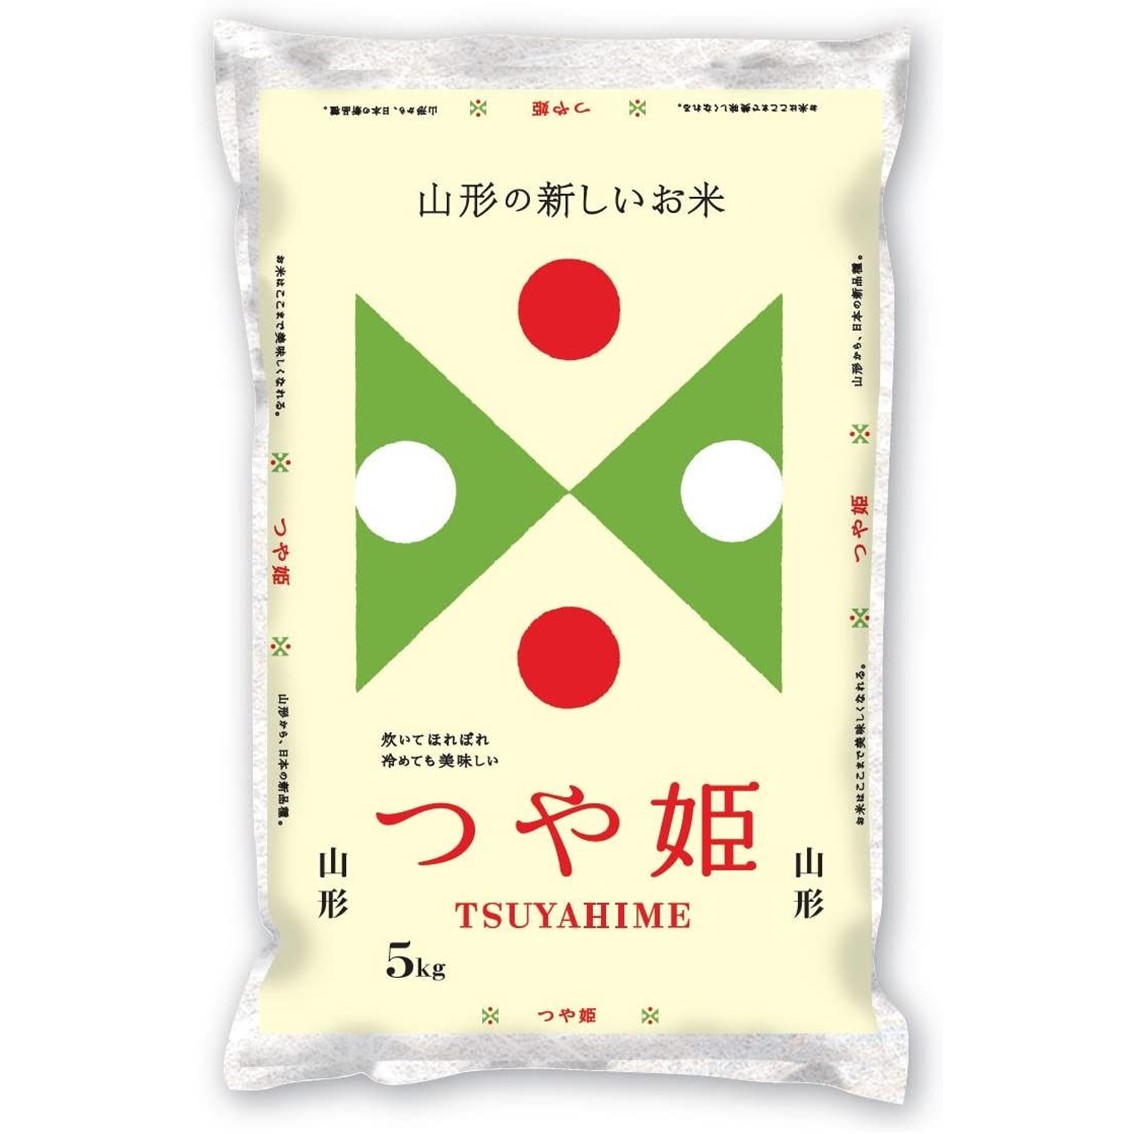 山形県産米の新品種「つや姫」